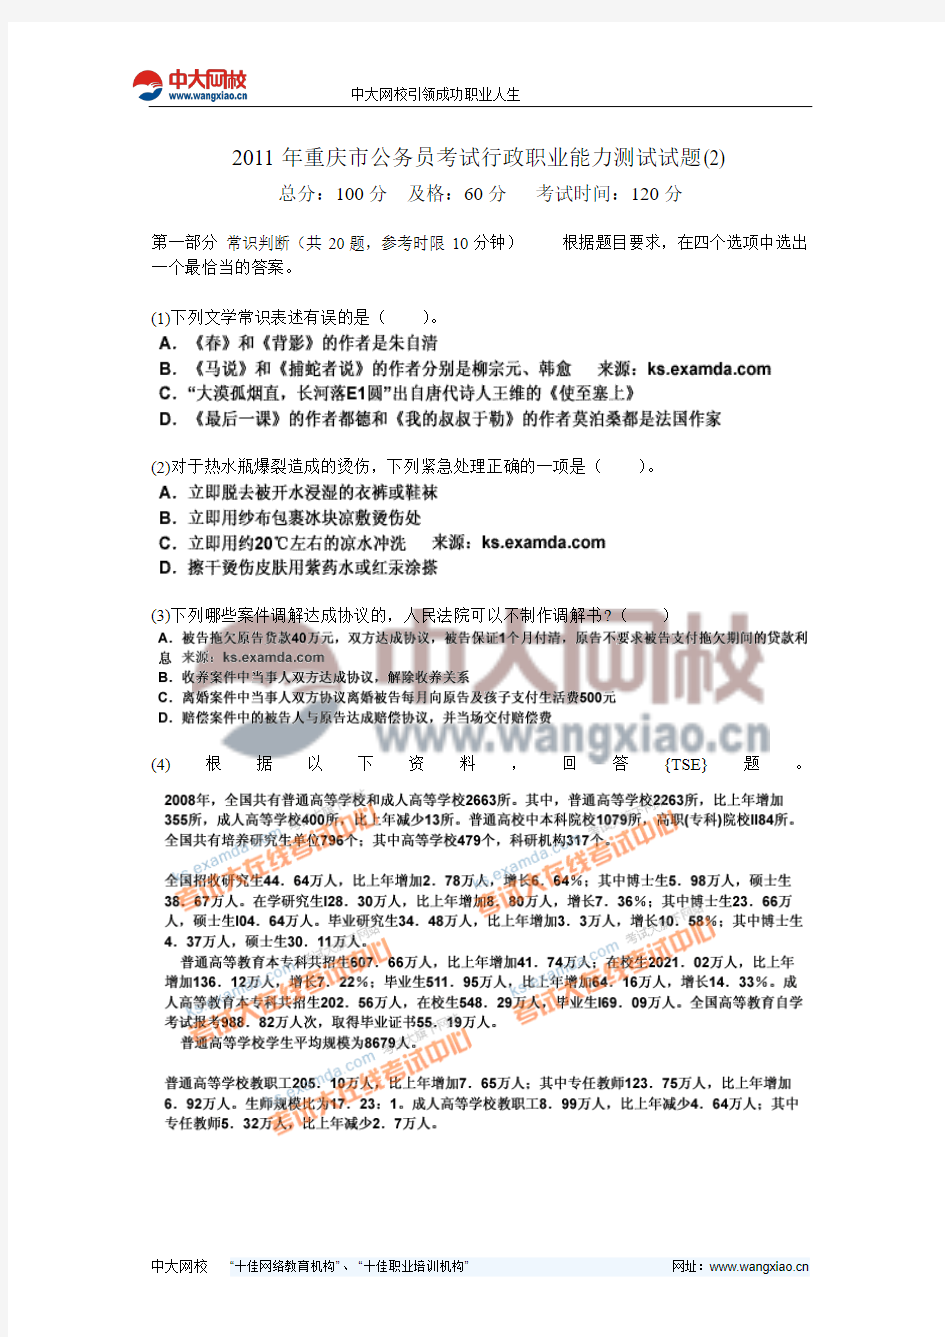 2011年重庆市公务员考试行政职业能力测试试题(2)-中大网校